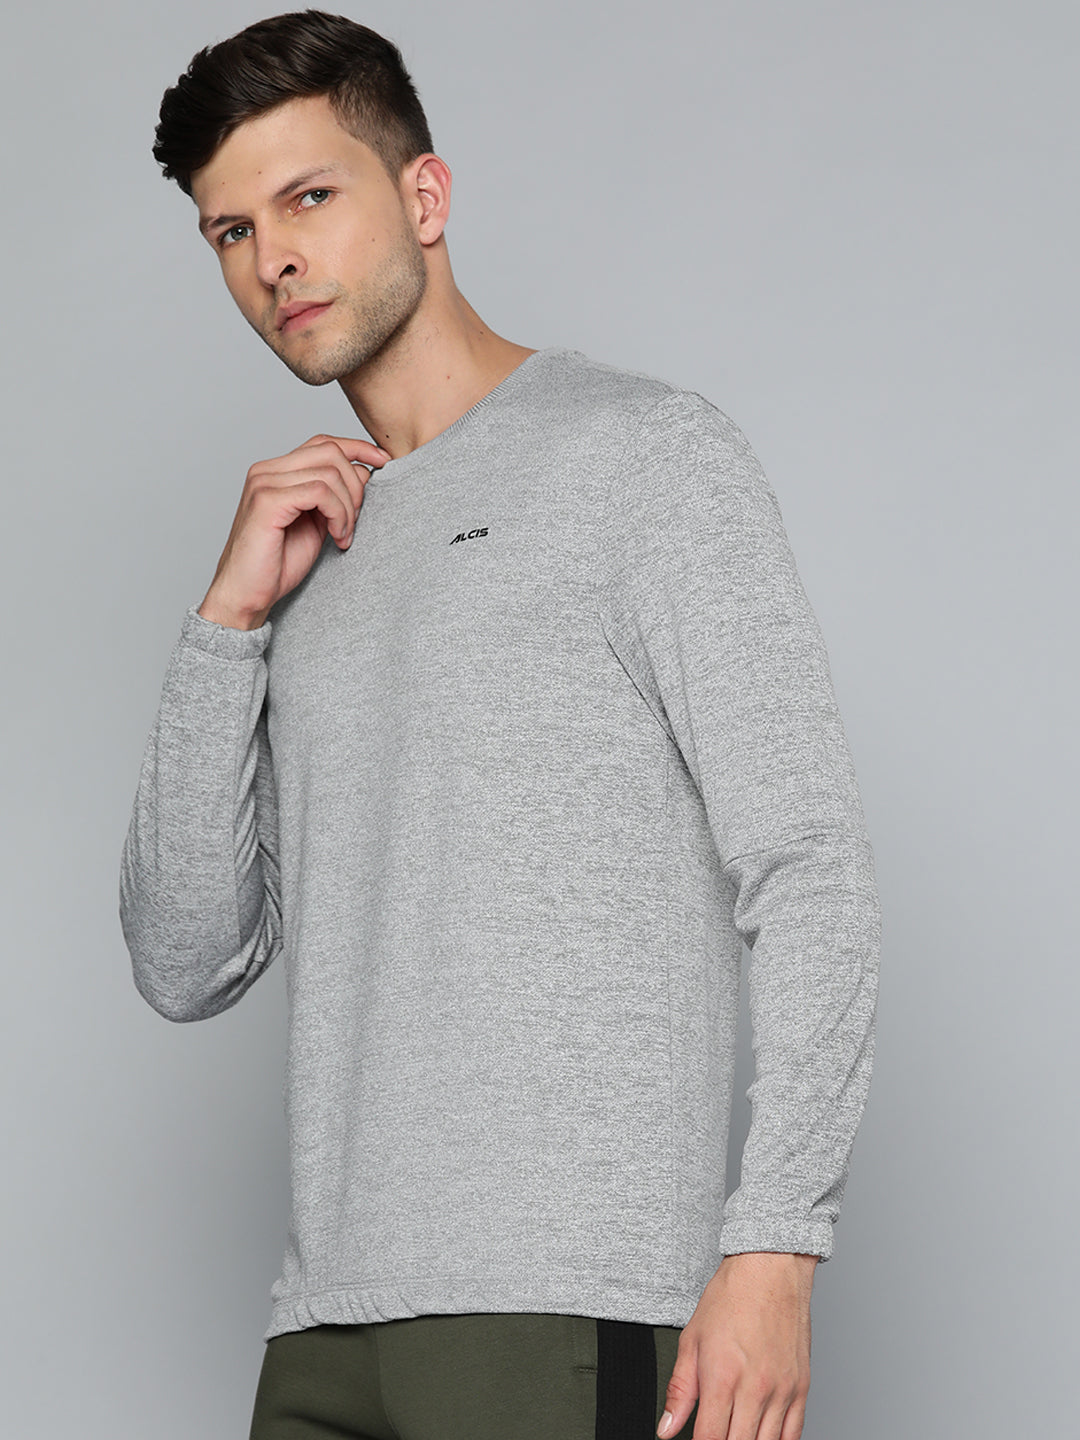 Alcis Men Grey Melange Solid Sweatshirt